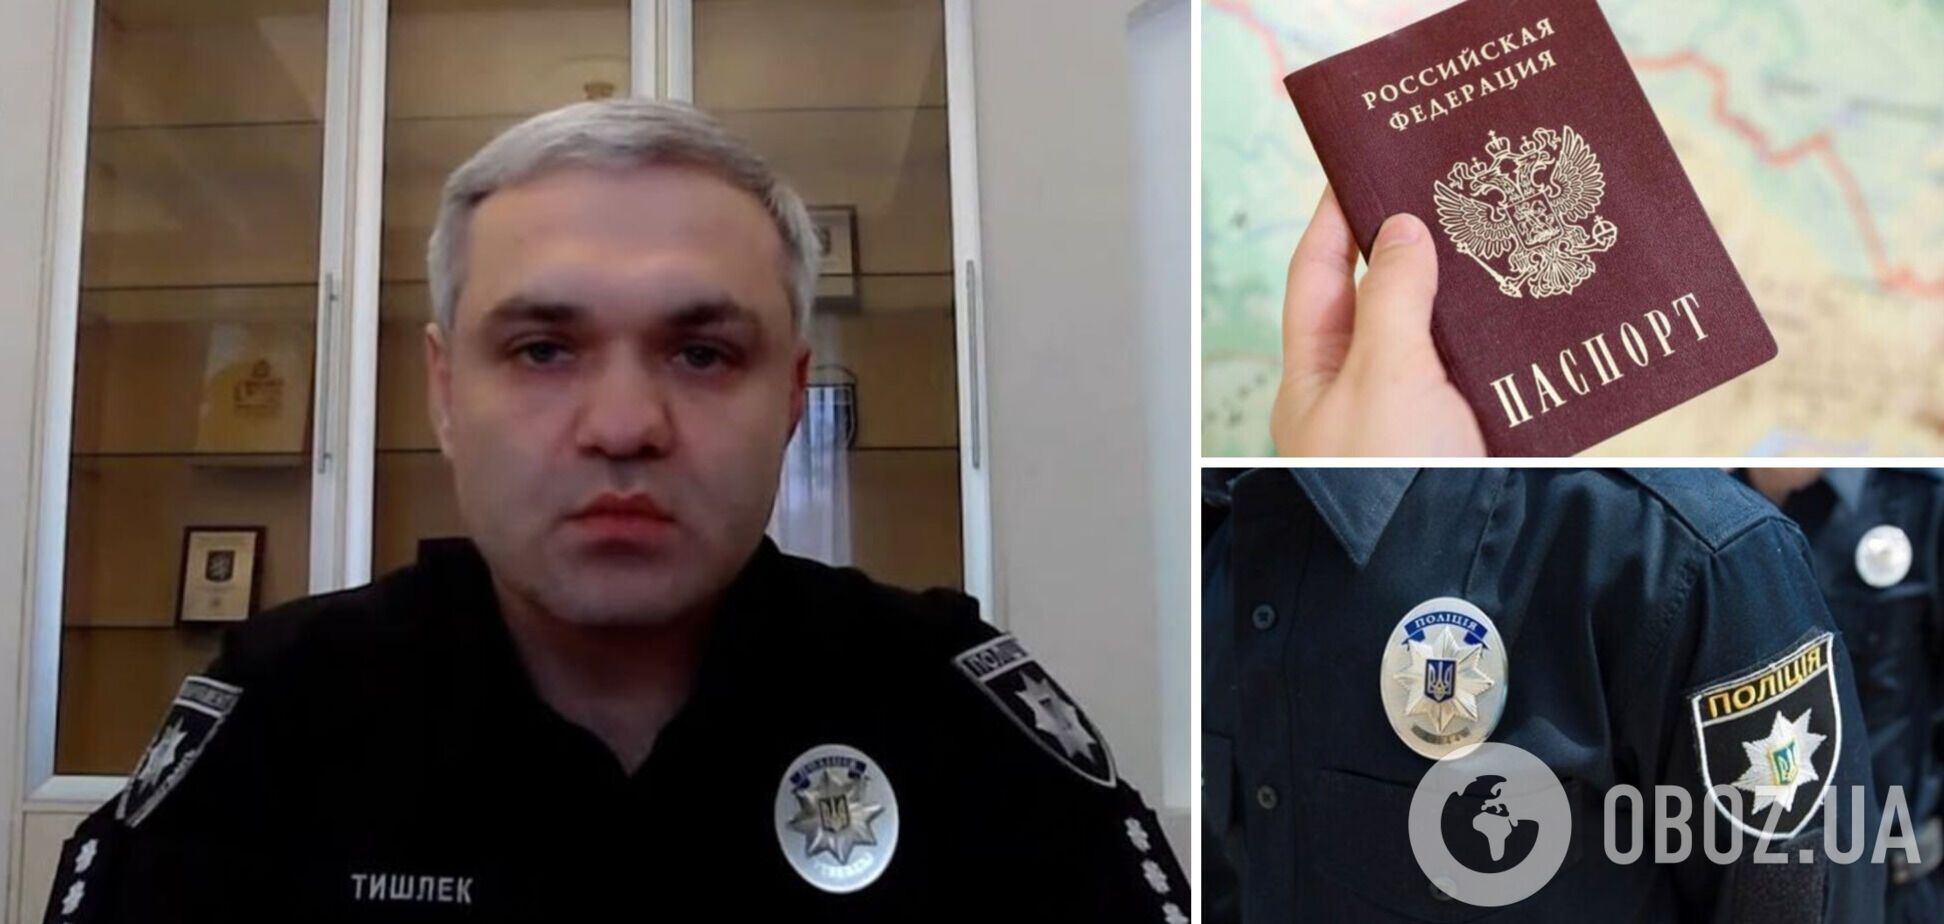 Заместитель главы Нацполиции Тышлек, жена которого имеет паспорт РФ, написал рапорт об отставке: что известно